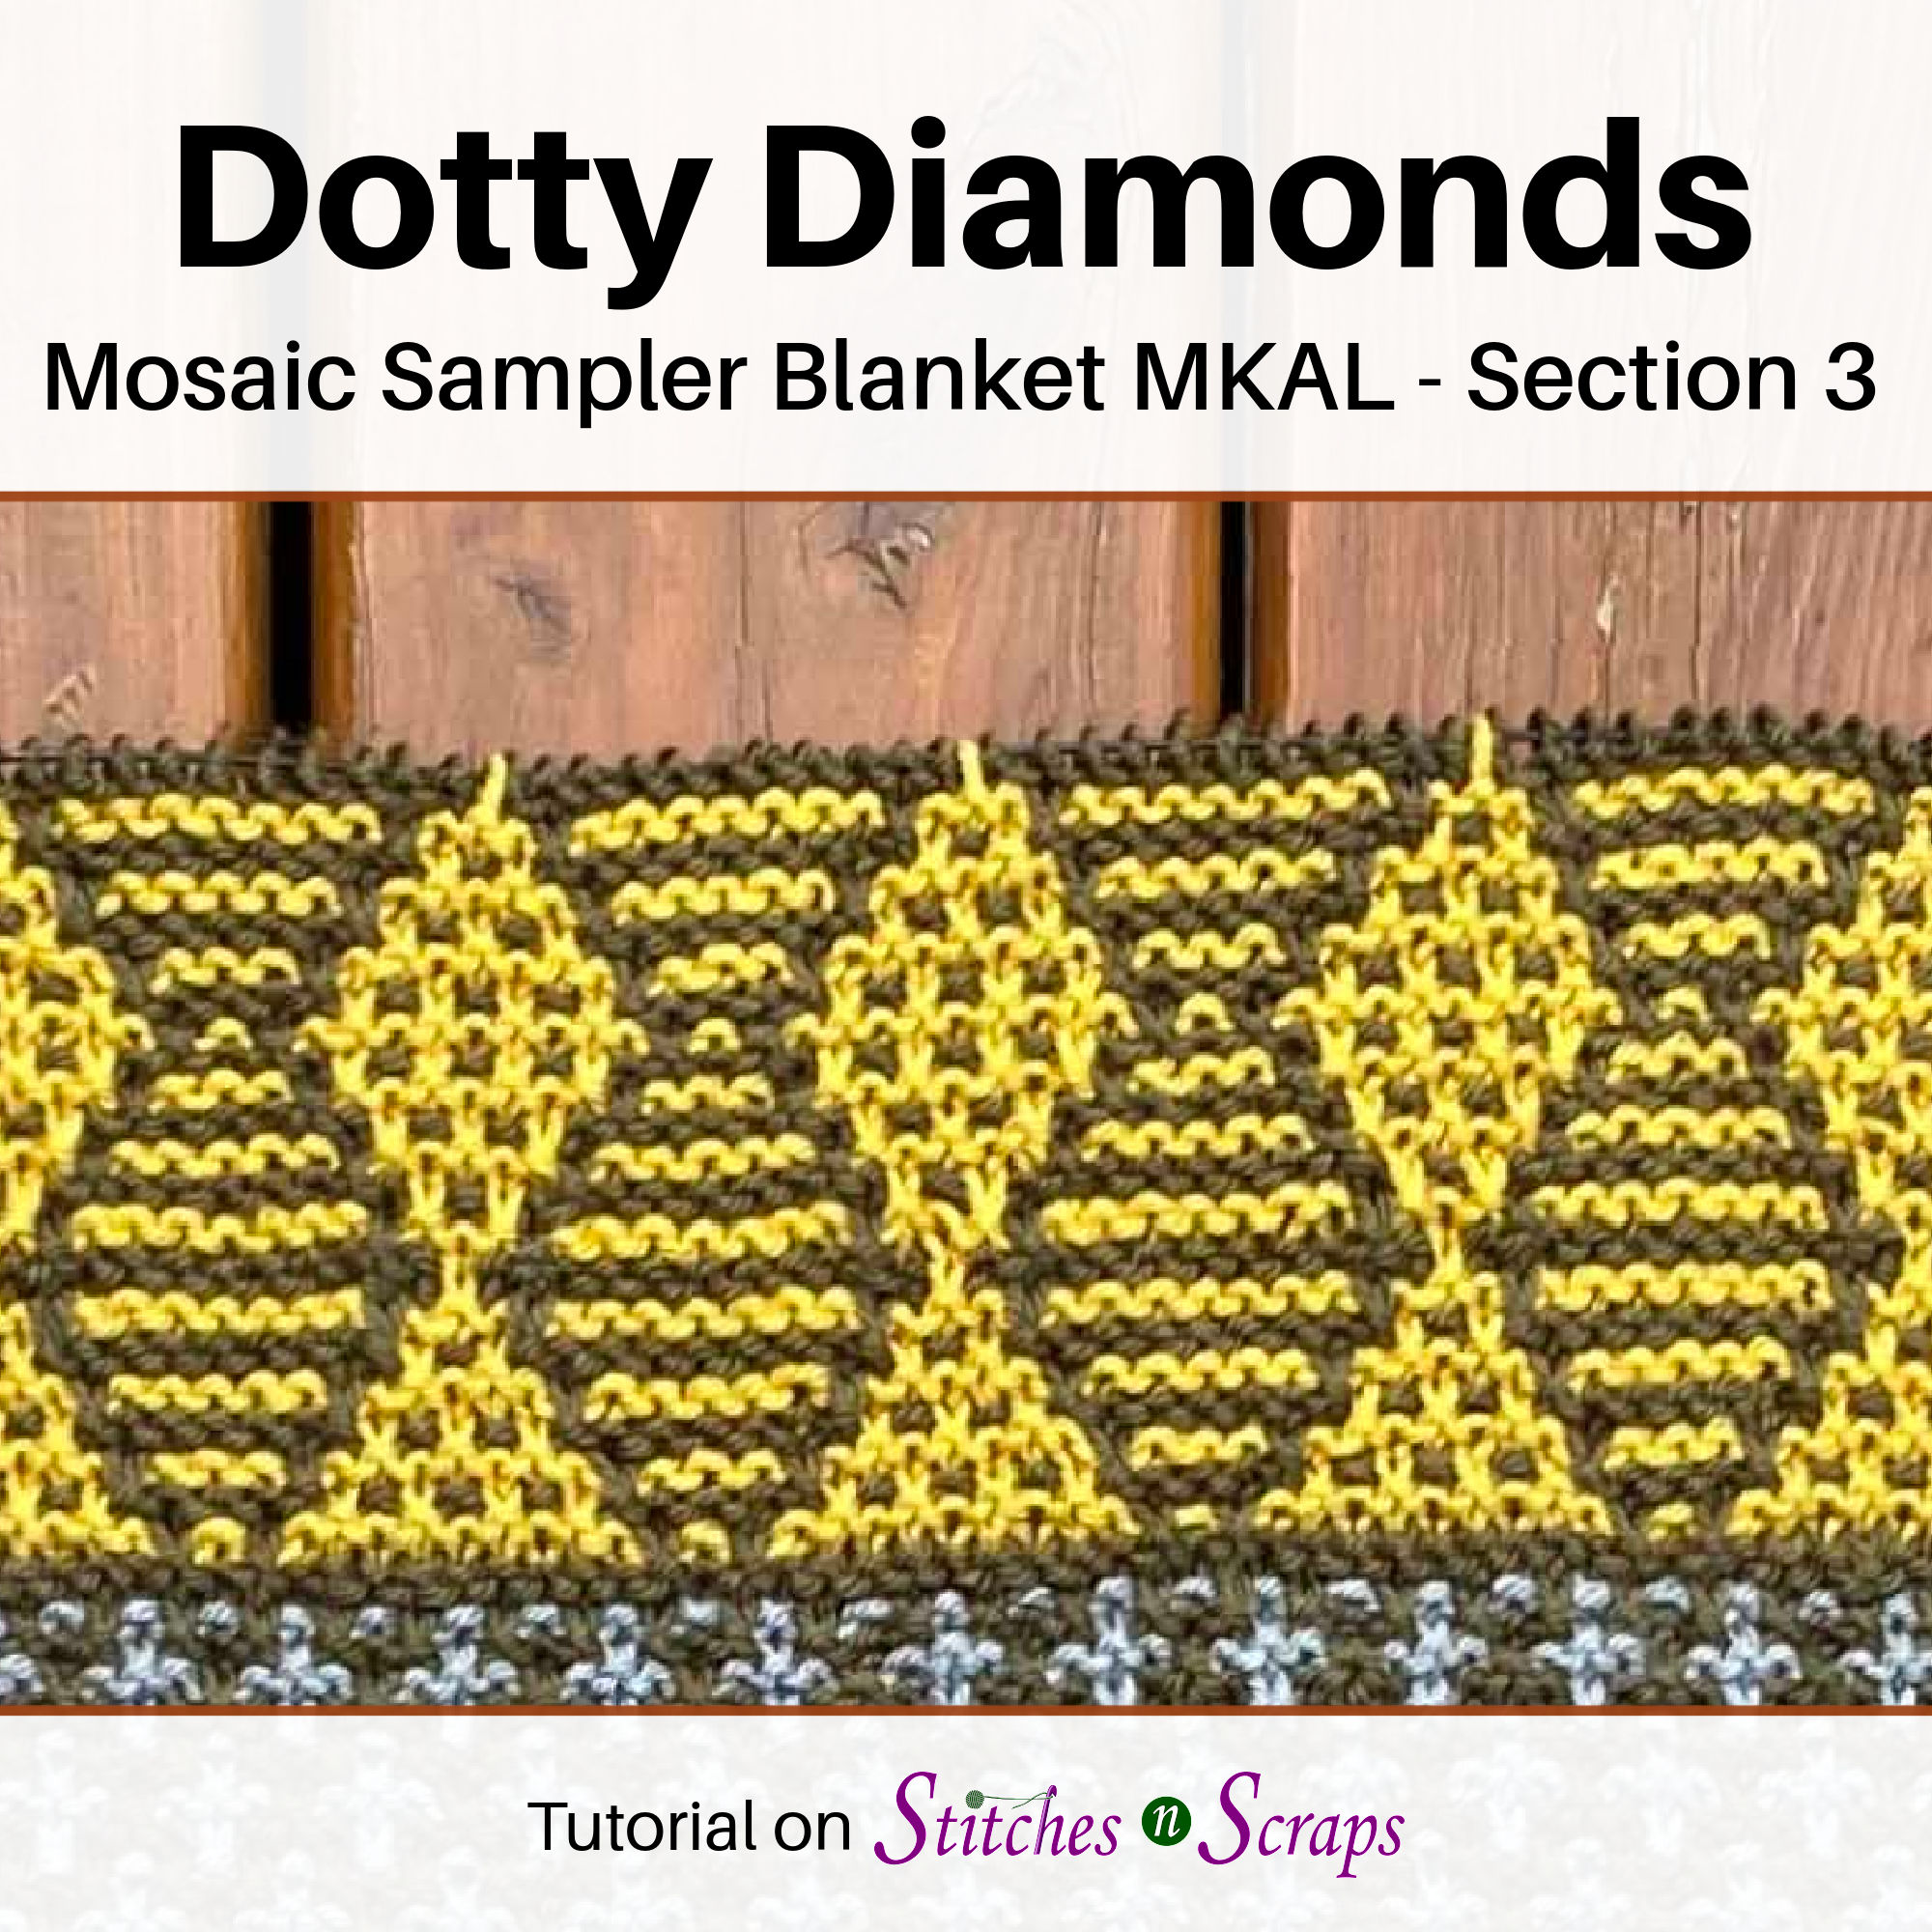 Dotty Diamonds - Mosaic Sampler Blanket MKAL Section 3